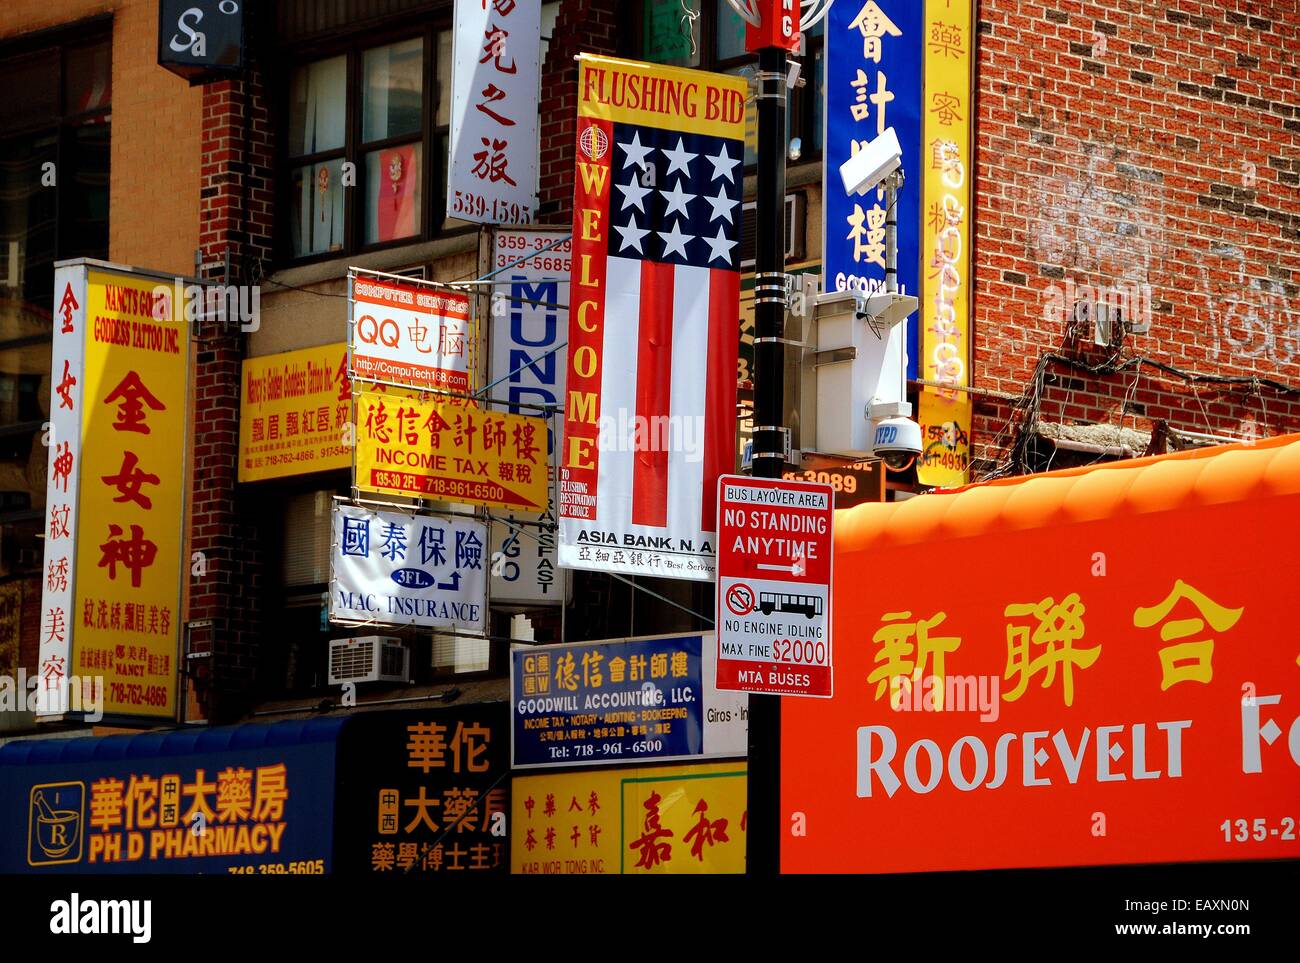 Lavaggio, NY: un vertiginoso susseguirsi di segni colorati vetrine di gesso in inglese e in cinese su una strada trafficata nel lavaggio Foto Stock